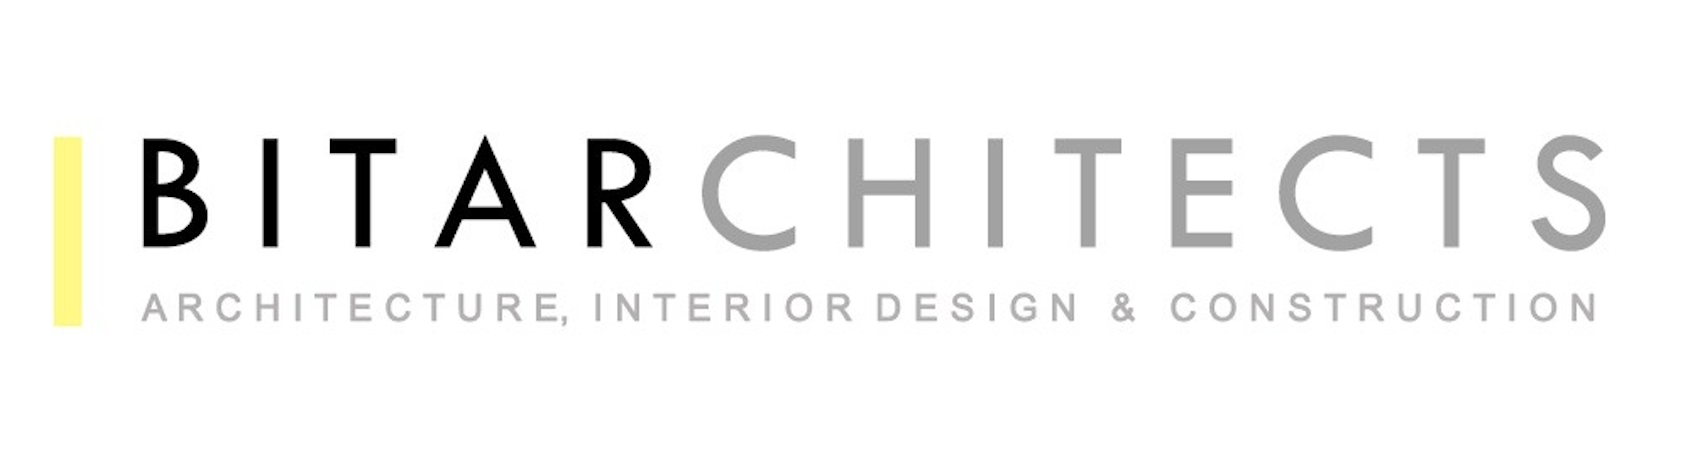 Bitarchitects Logo